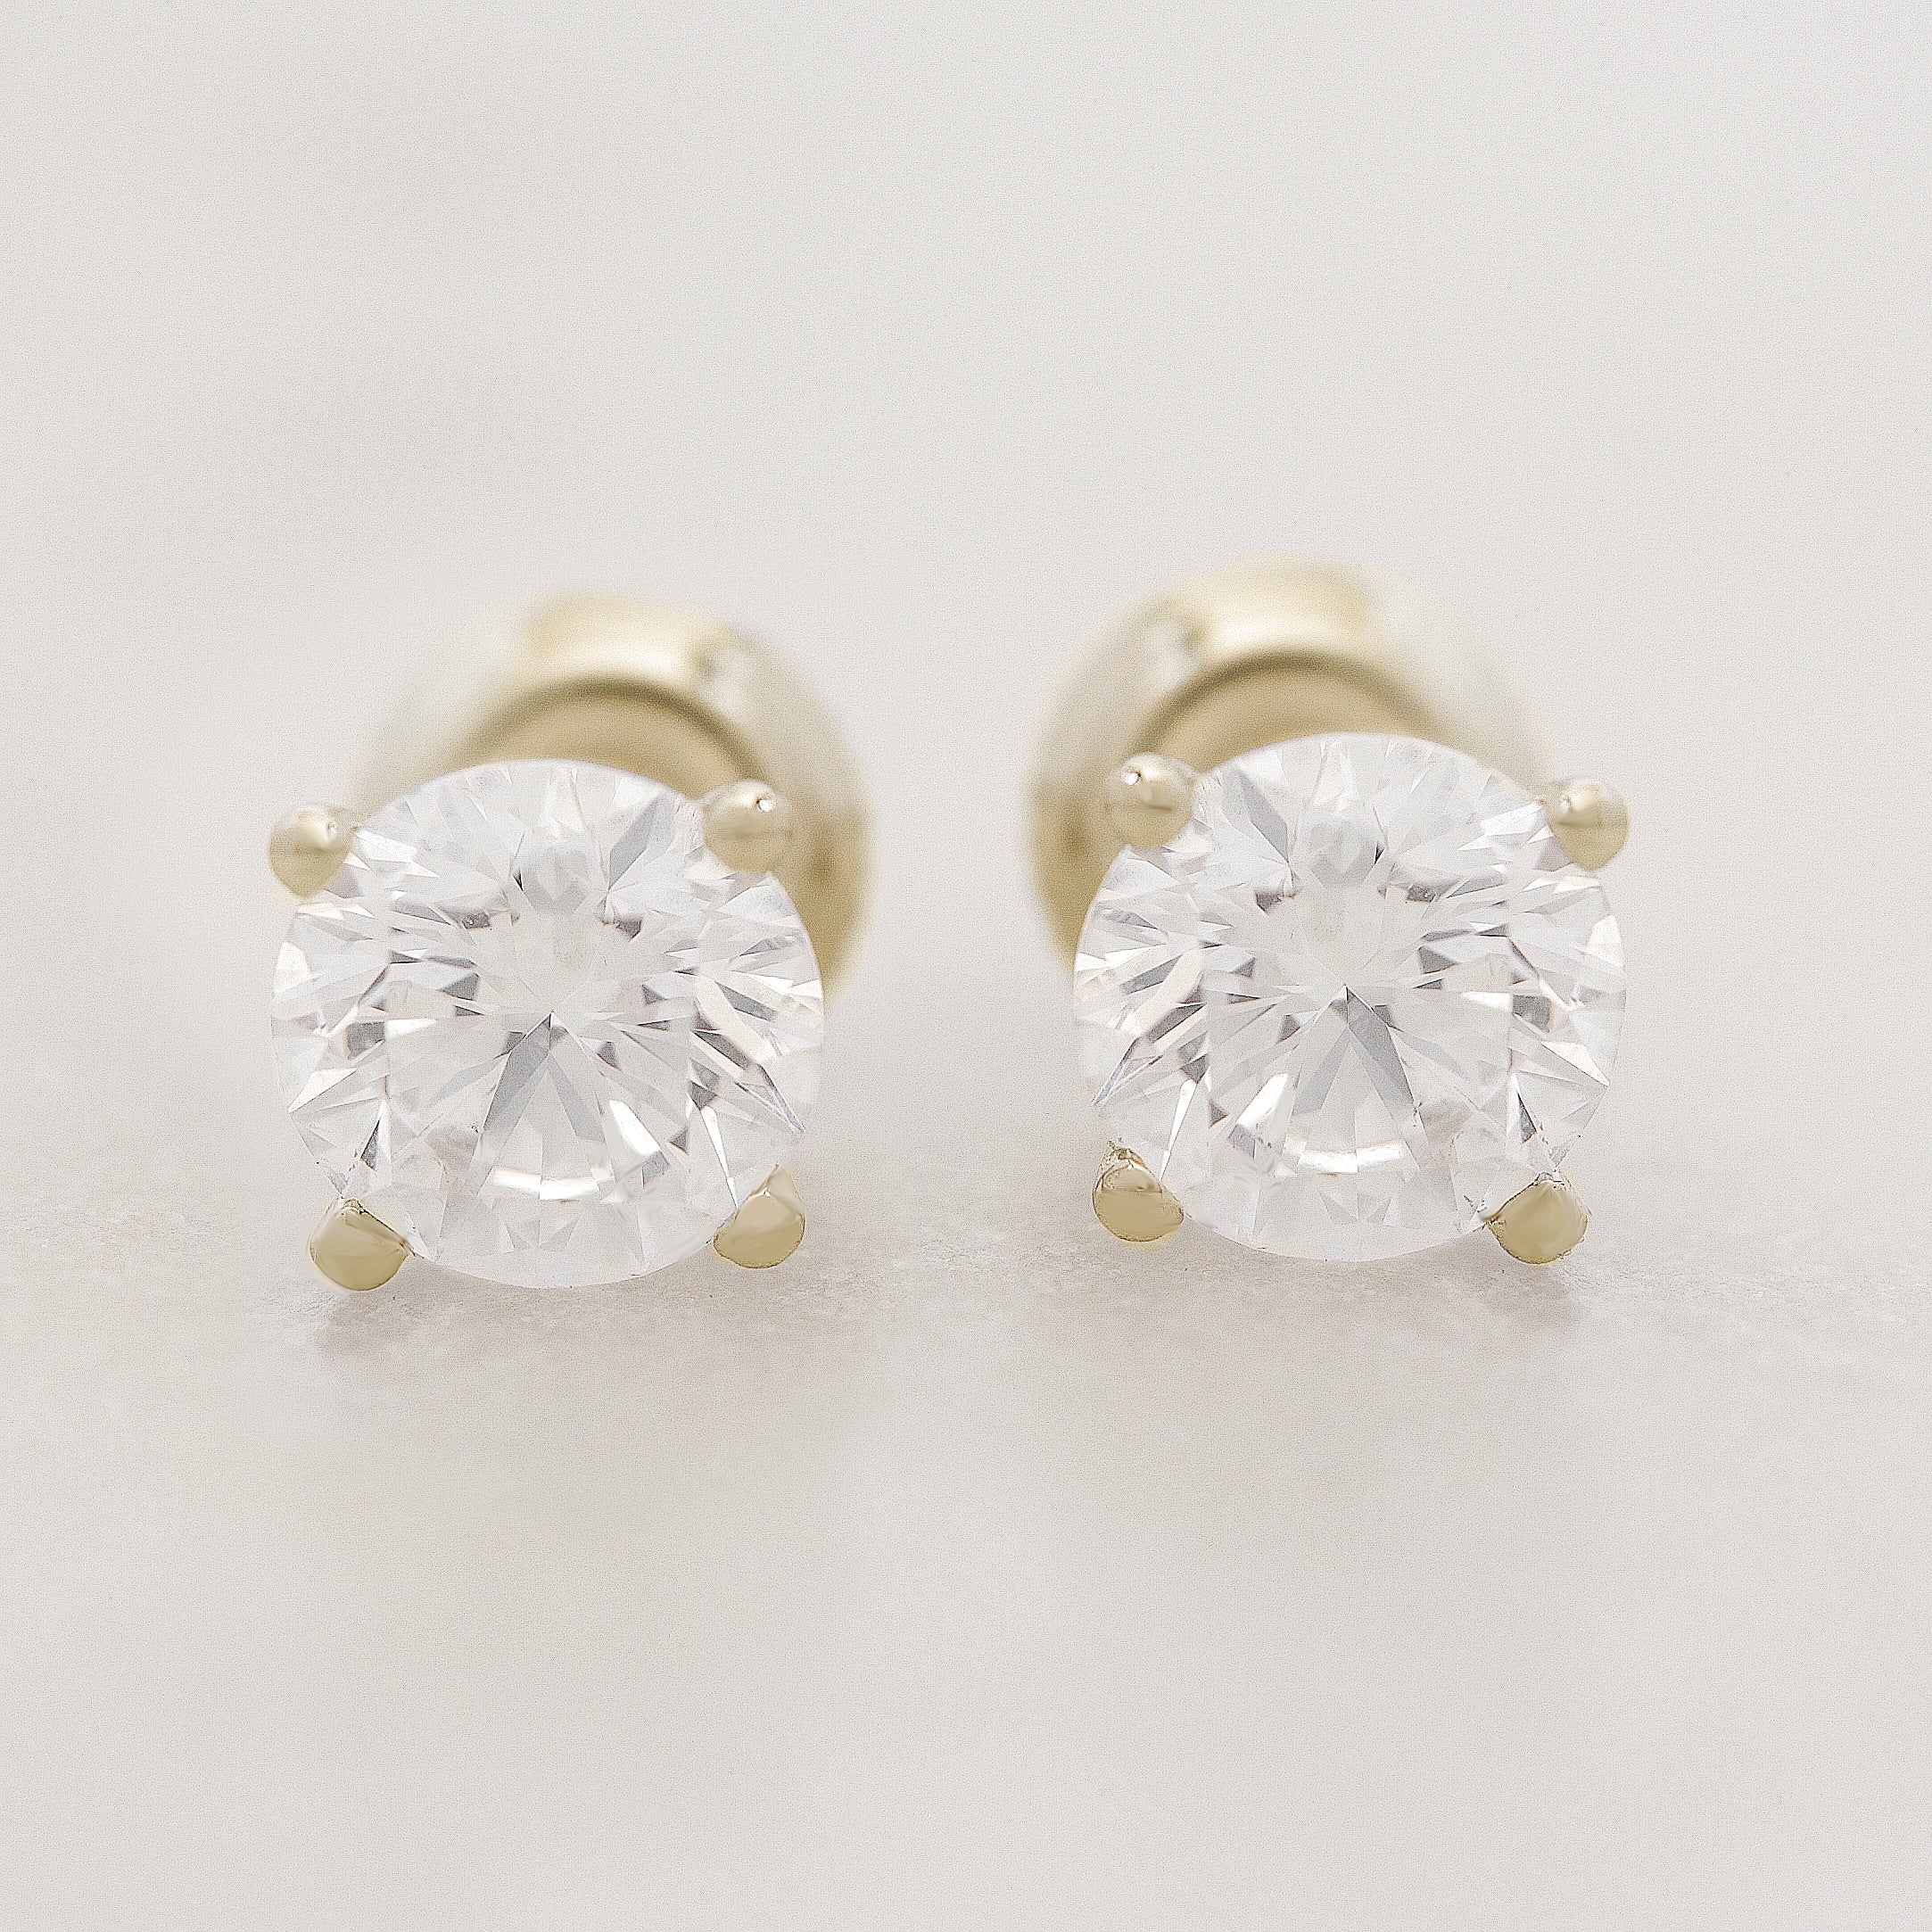 Martini 2 carat Diamond Stud Earrings